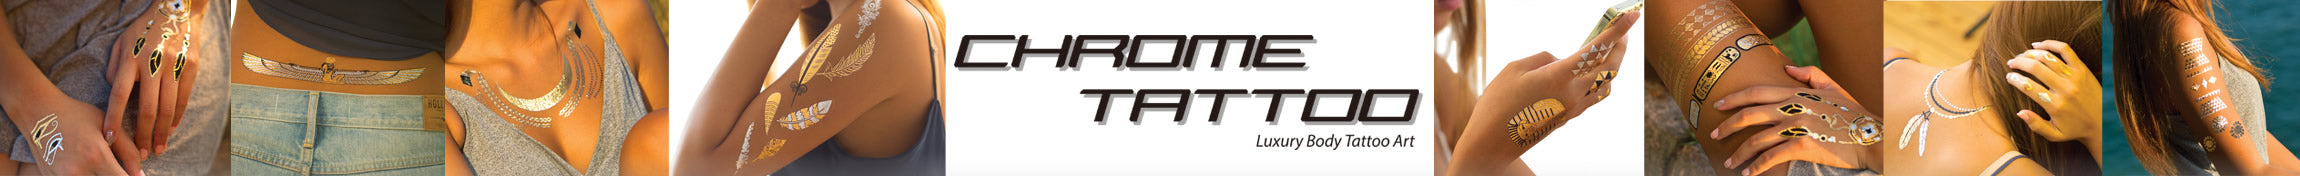 Chrome Tattoo